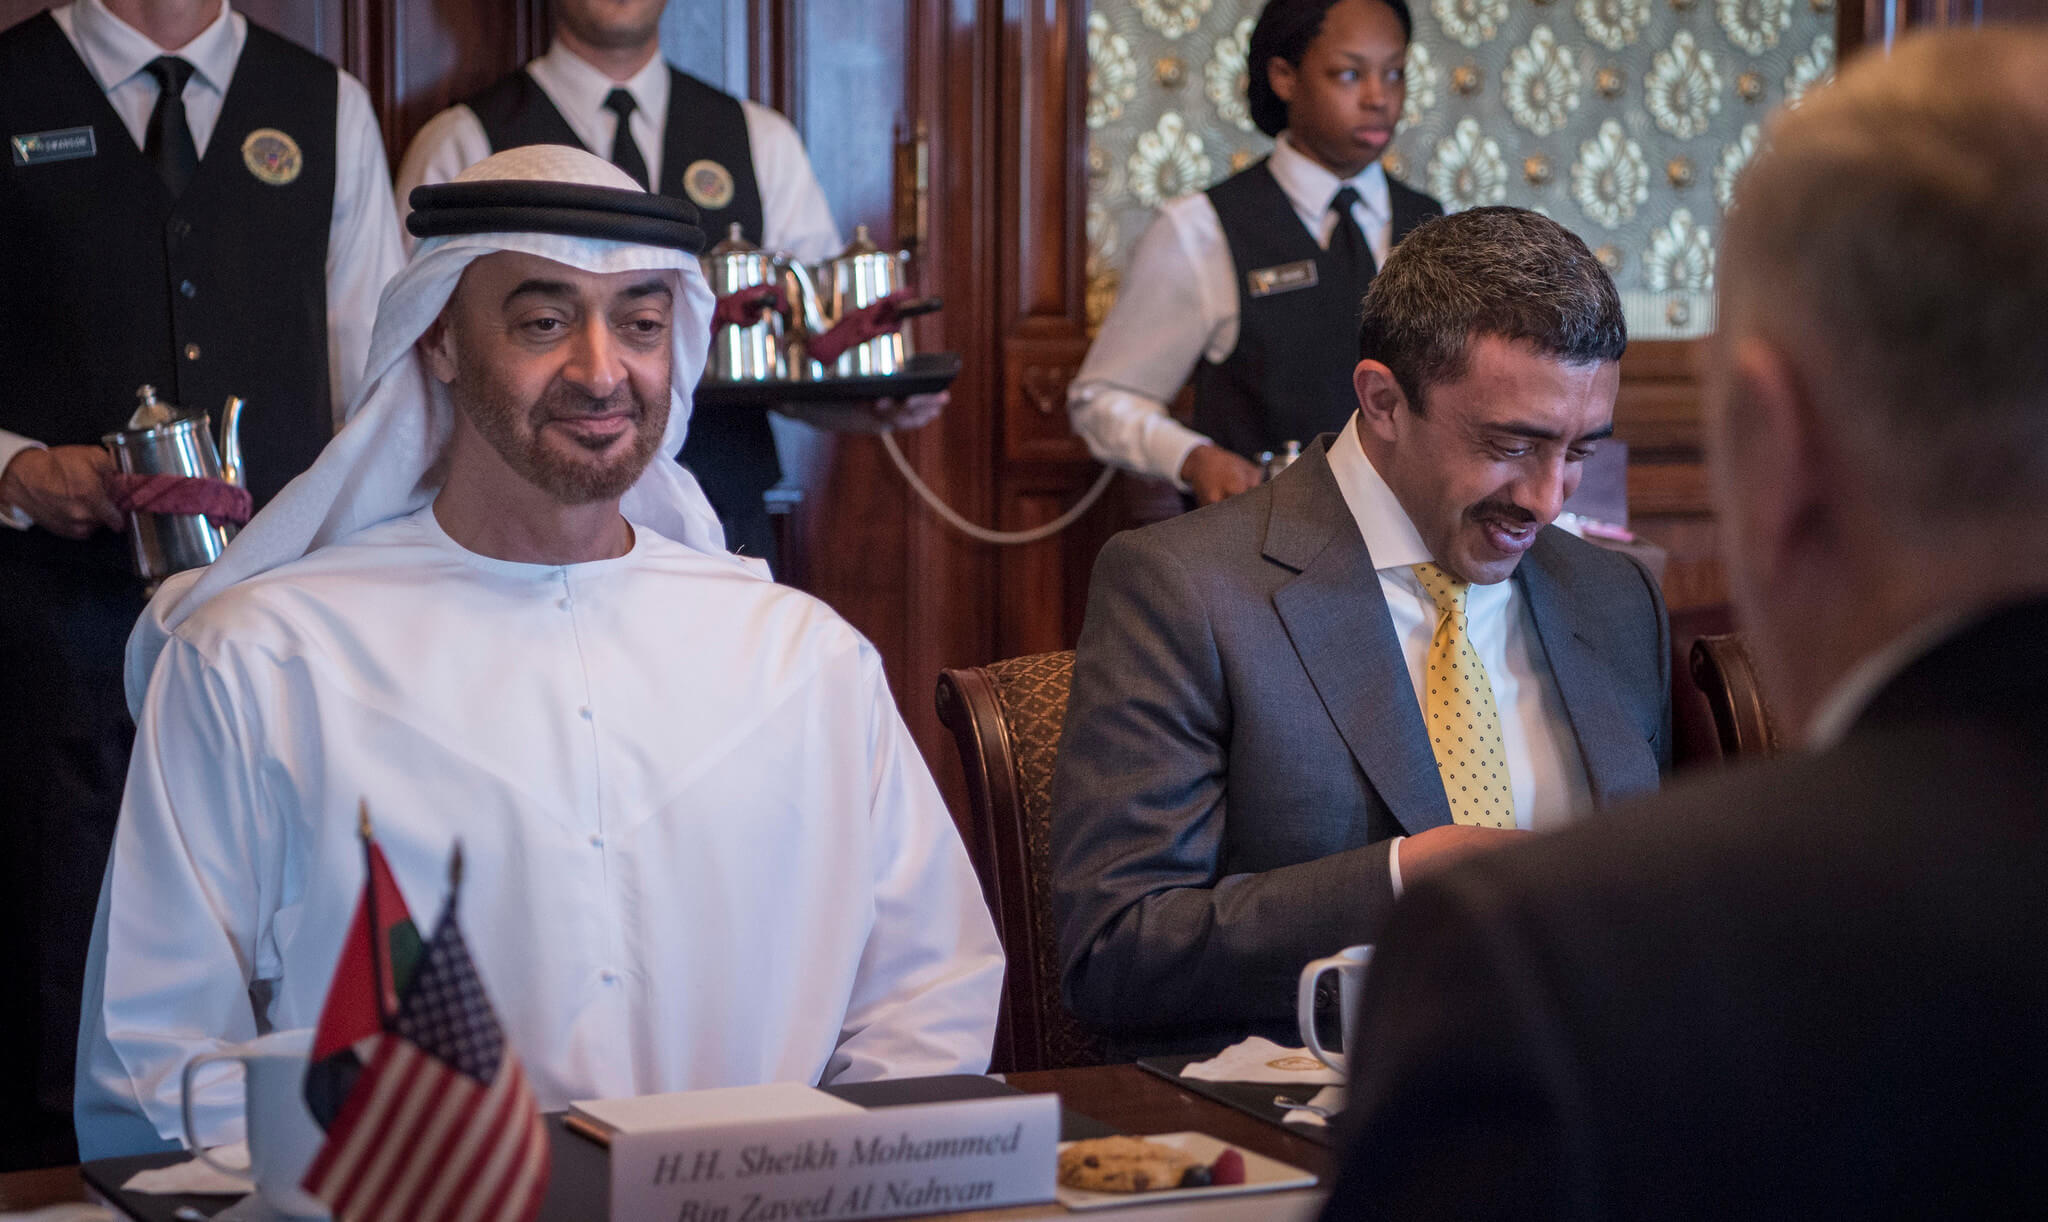 Aarts - Mohammed bin Zayed in 2017. US Secretary of Defense